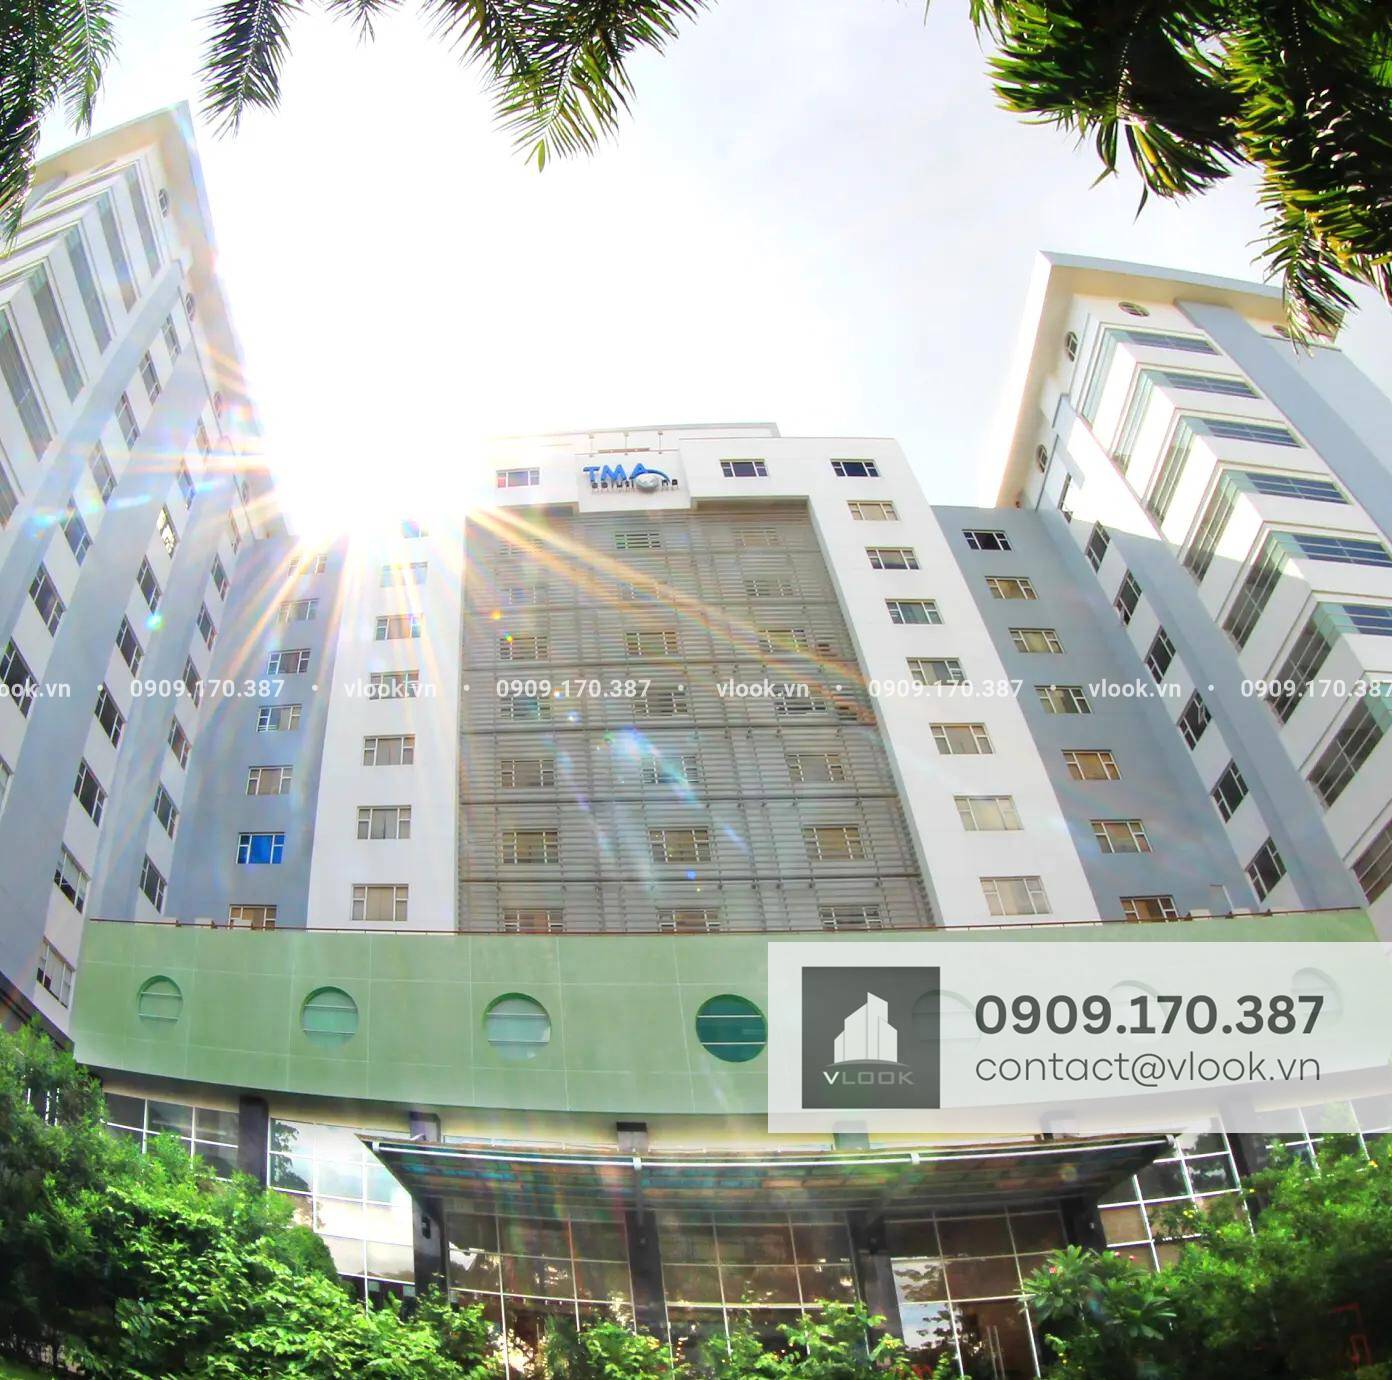 Cao ốc văn phòng cho thuê tòa nhà TMA, Công viên phần mềm Quang Trung, Quận 12, TP.HCM - vlook.vn